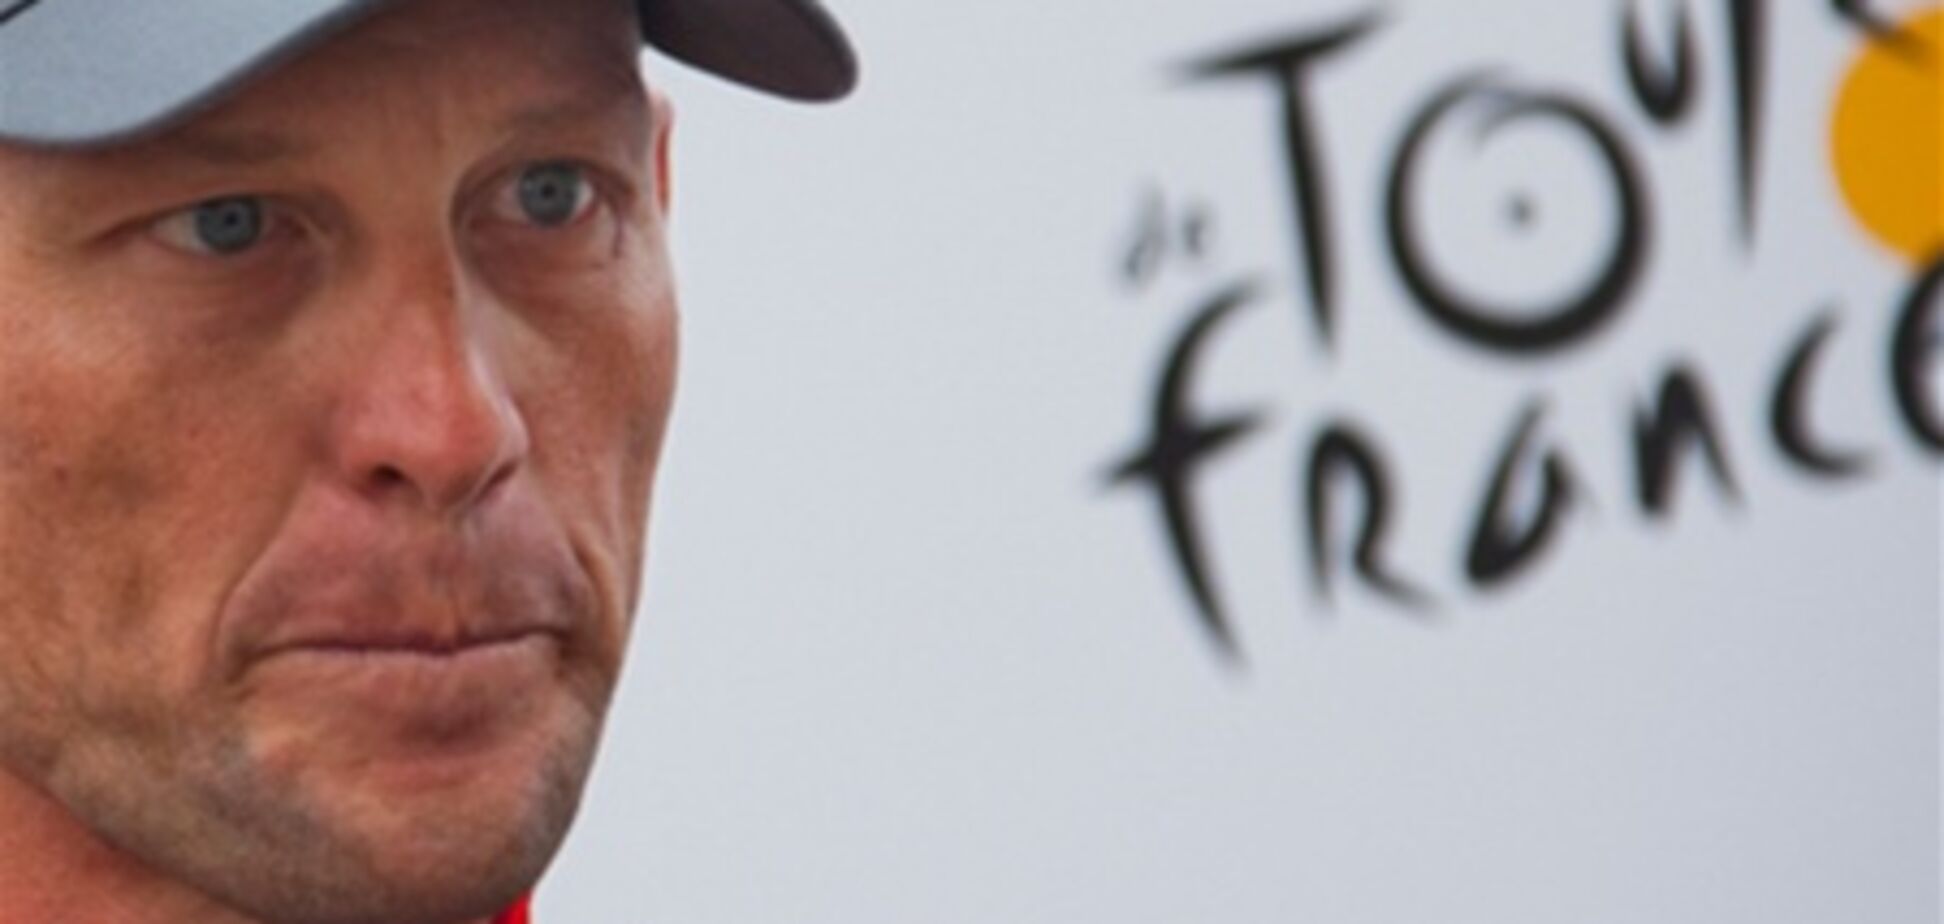 Лэнс Армстронг признался Опре Уинфри в употреблении допинга